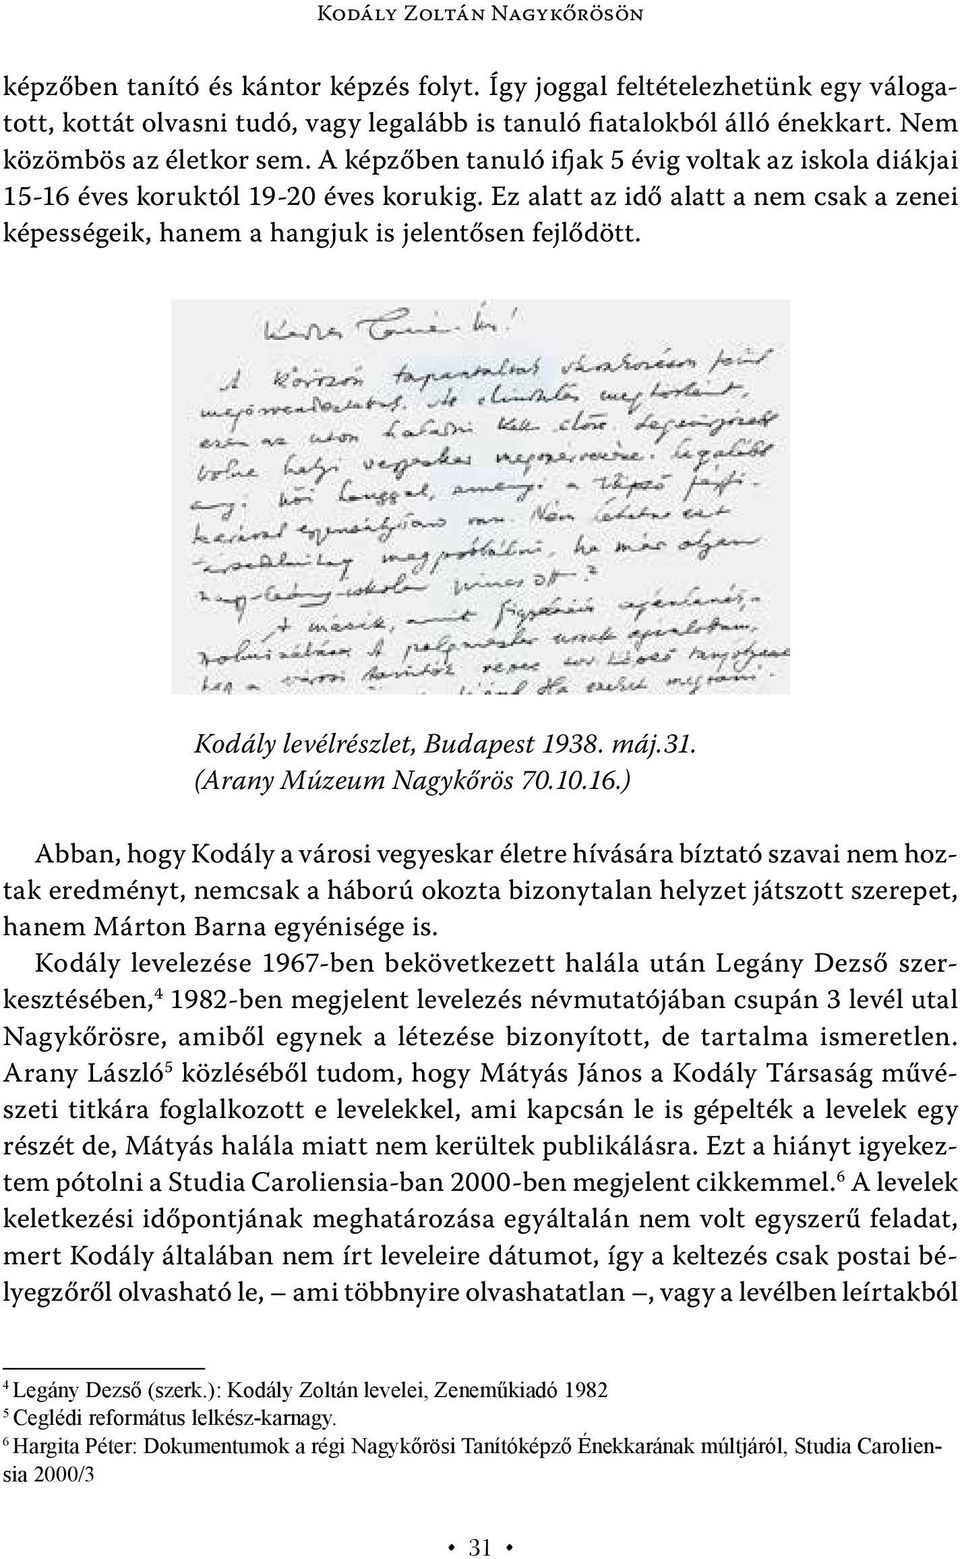 Ez alatt az idő alatt a nem csak a zenei képességeik, hanem a hangjuk is jelentősen fejlődött. Kodály levélrészlet, Budapest 1938. máj.31. (Arany Múzeum Nagykőrös 70.10.16.